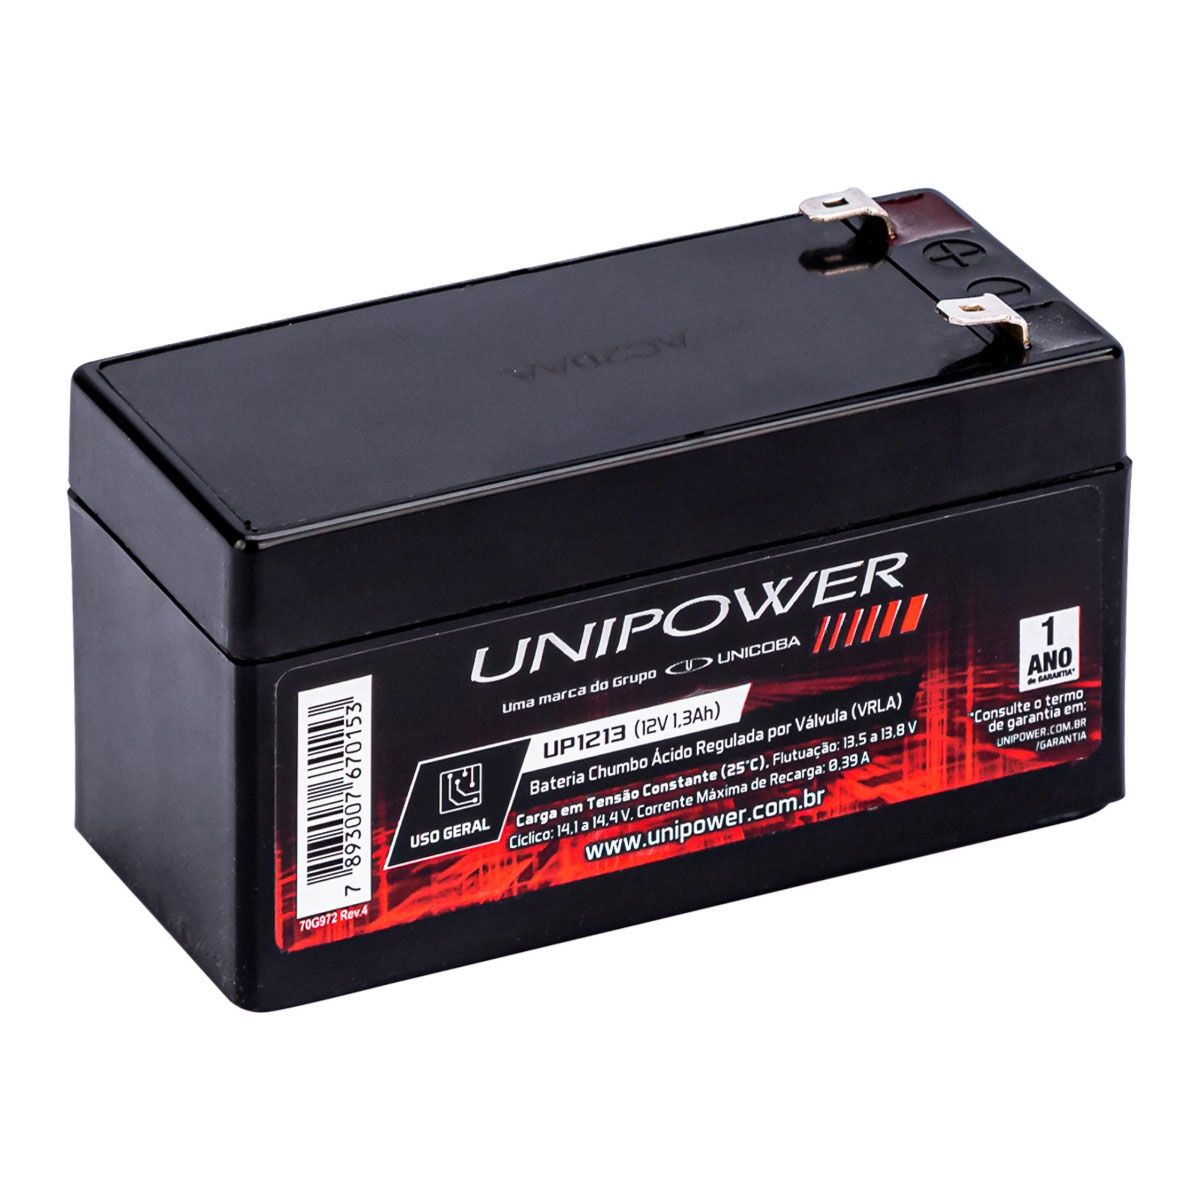 Bateria 12V / 1,3Ah - ideal para Alarme e Relogios de Ponto - Selada Estacionária - Unipower UP1213